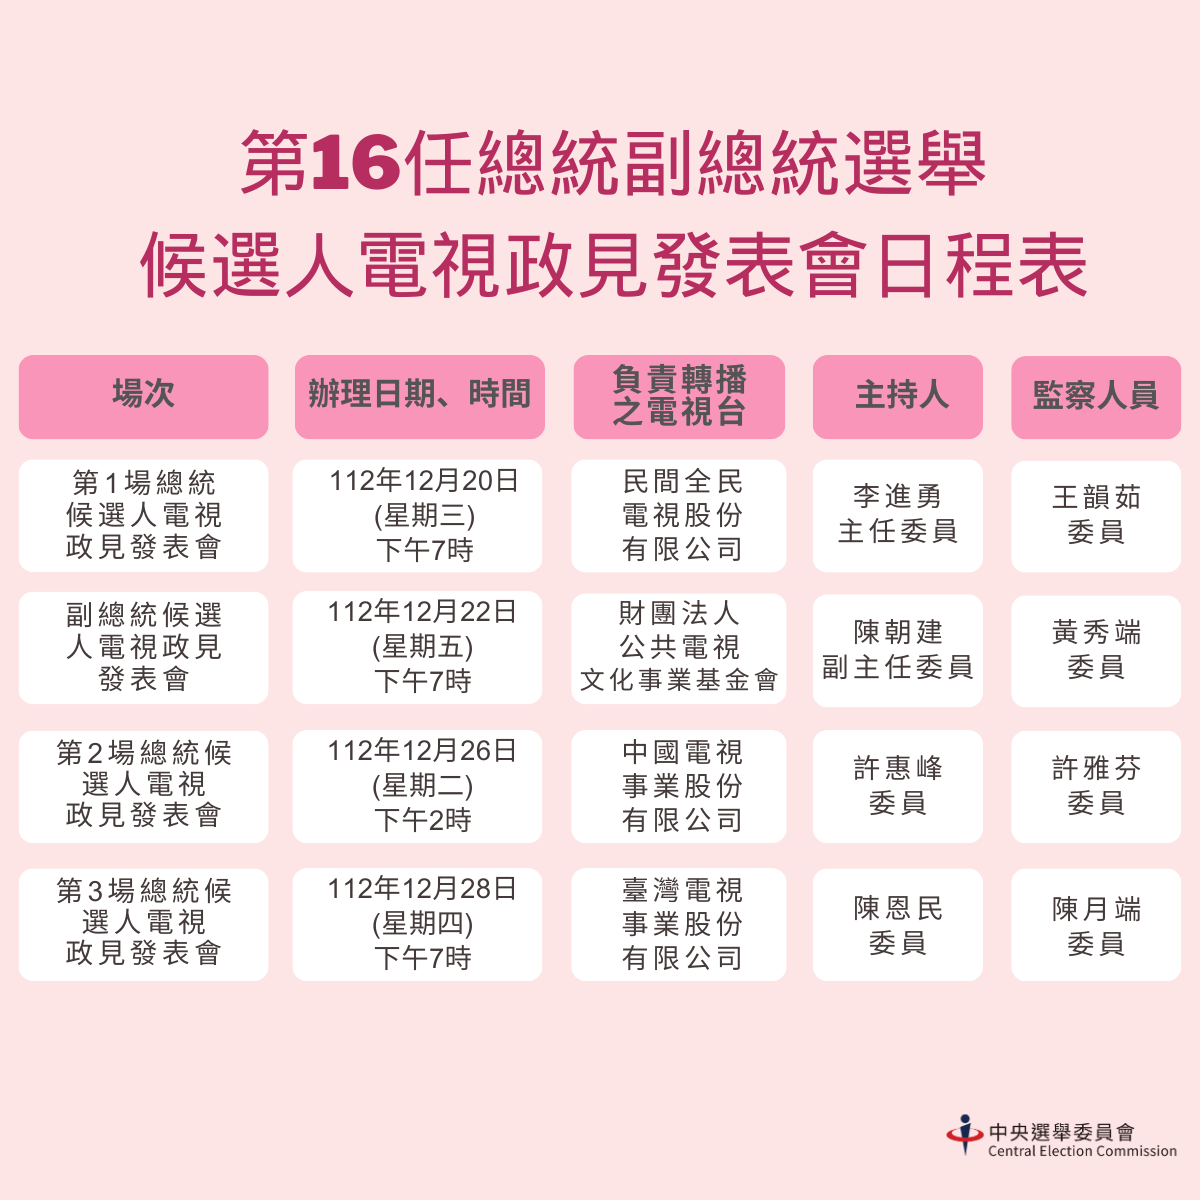 Trong tháng 1/2024 sẽ diễn ra tổng cộng 4 buổi phát biểu phương châm chính sách của các ứng cử viên ra tranh cử Tổng thống và Phó Tổng thống Đài Loan khóa 16 (Ảnh: Ủy ban bầu cử Trung ương)